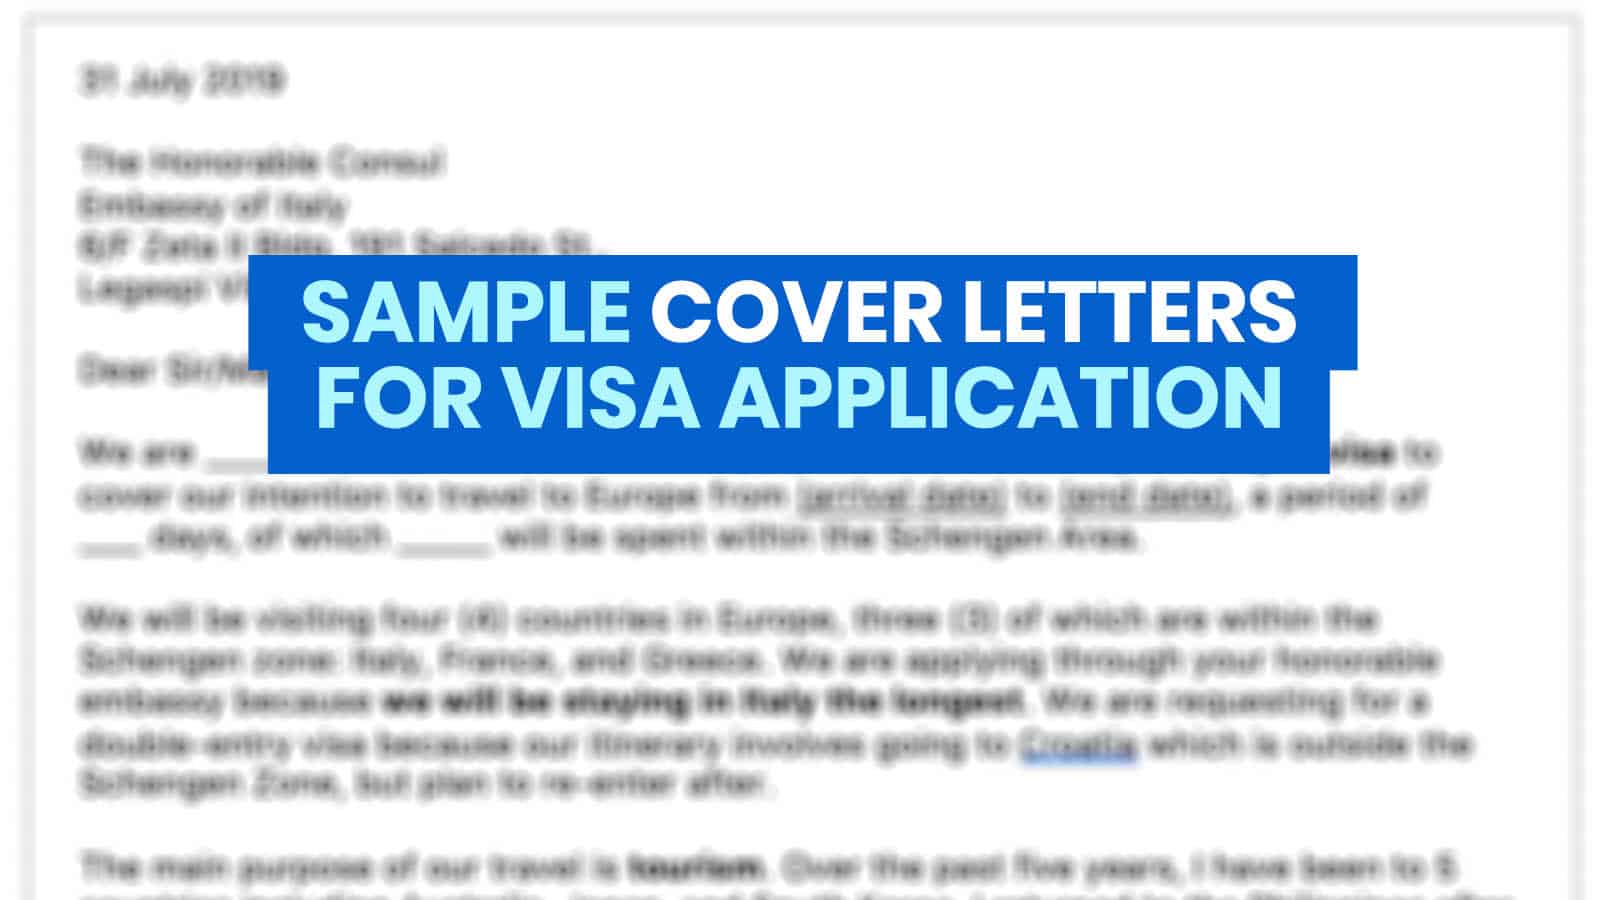 申请签证的求职信样本:韩国，申根，澳大利亚